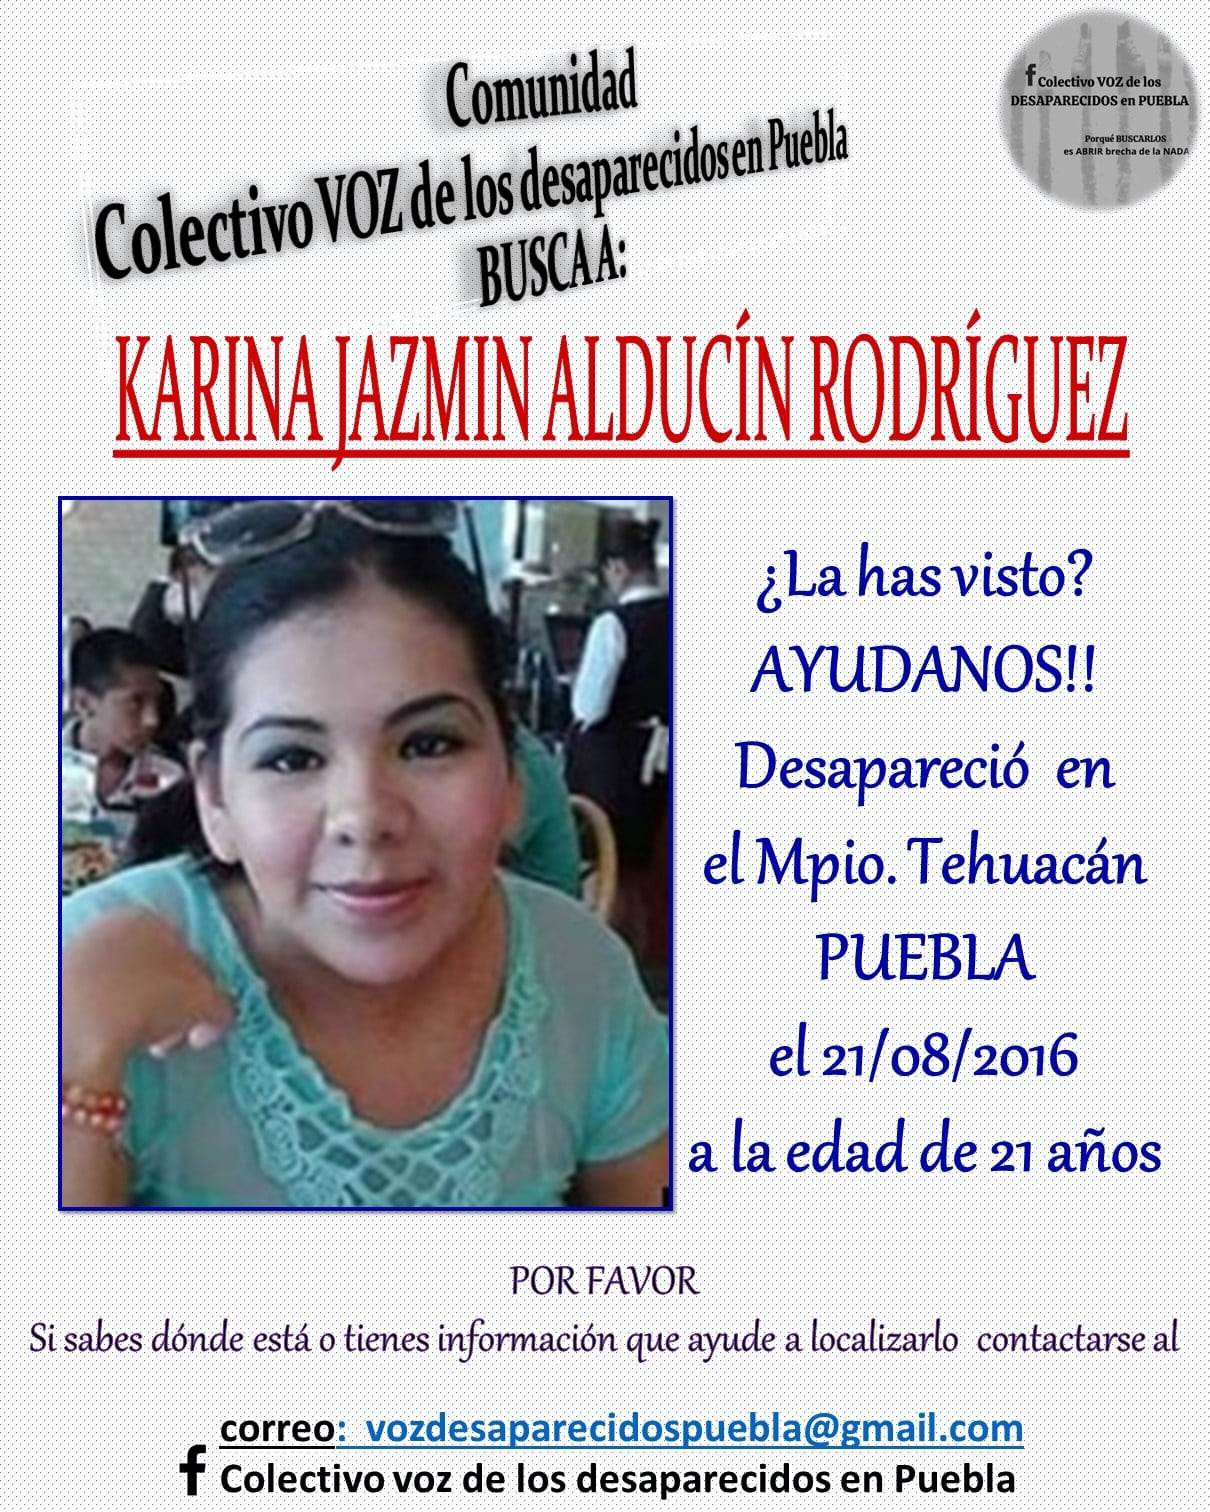 Entre los casos de mujeres desaparecidas en Tehuacán se encuentra el de Karina Jazmin.